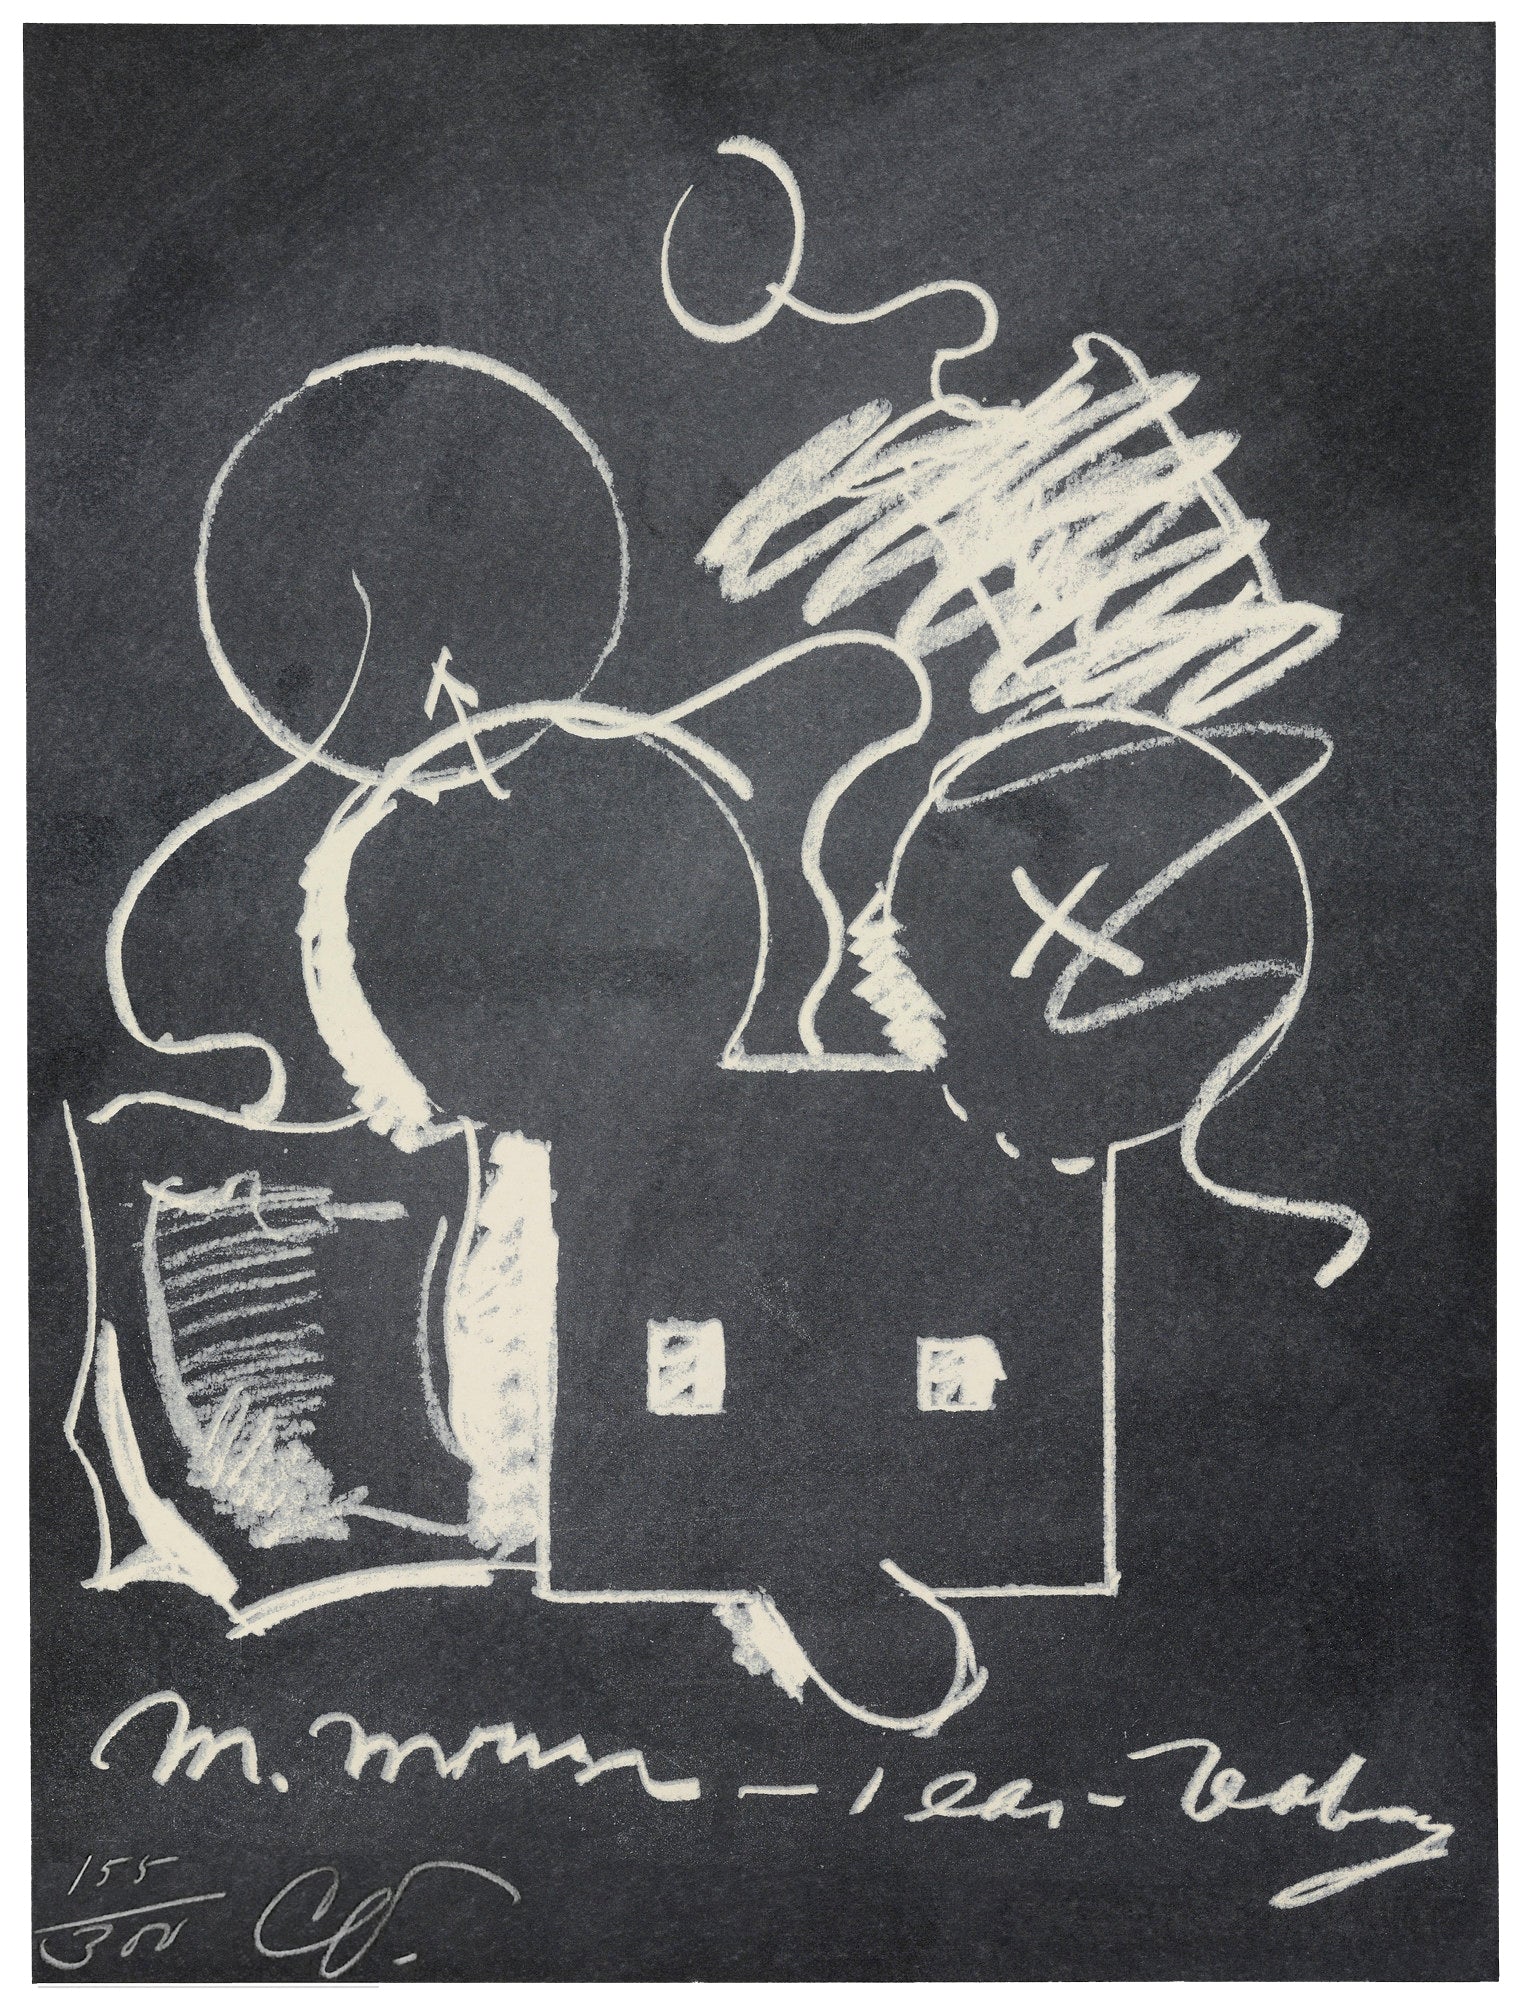 Claes Oldenburg M. Mouse-1 Ear-Tea Bag, 1973 full sheet